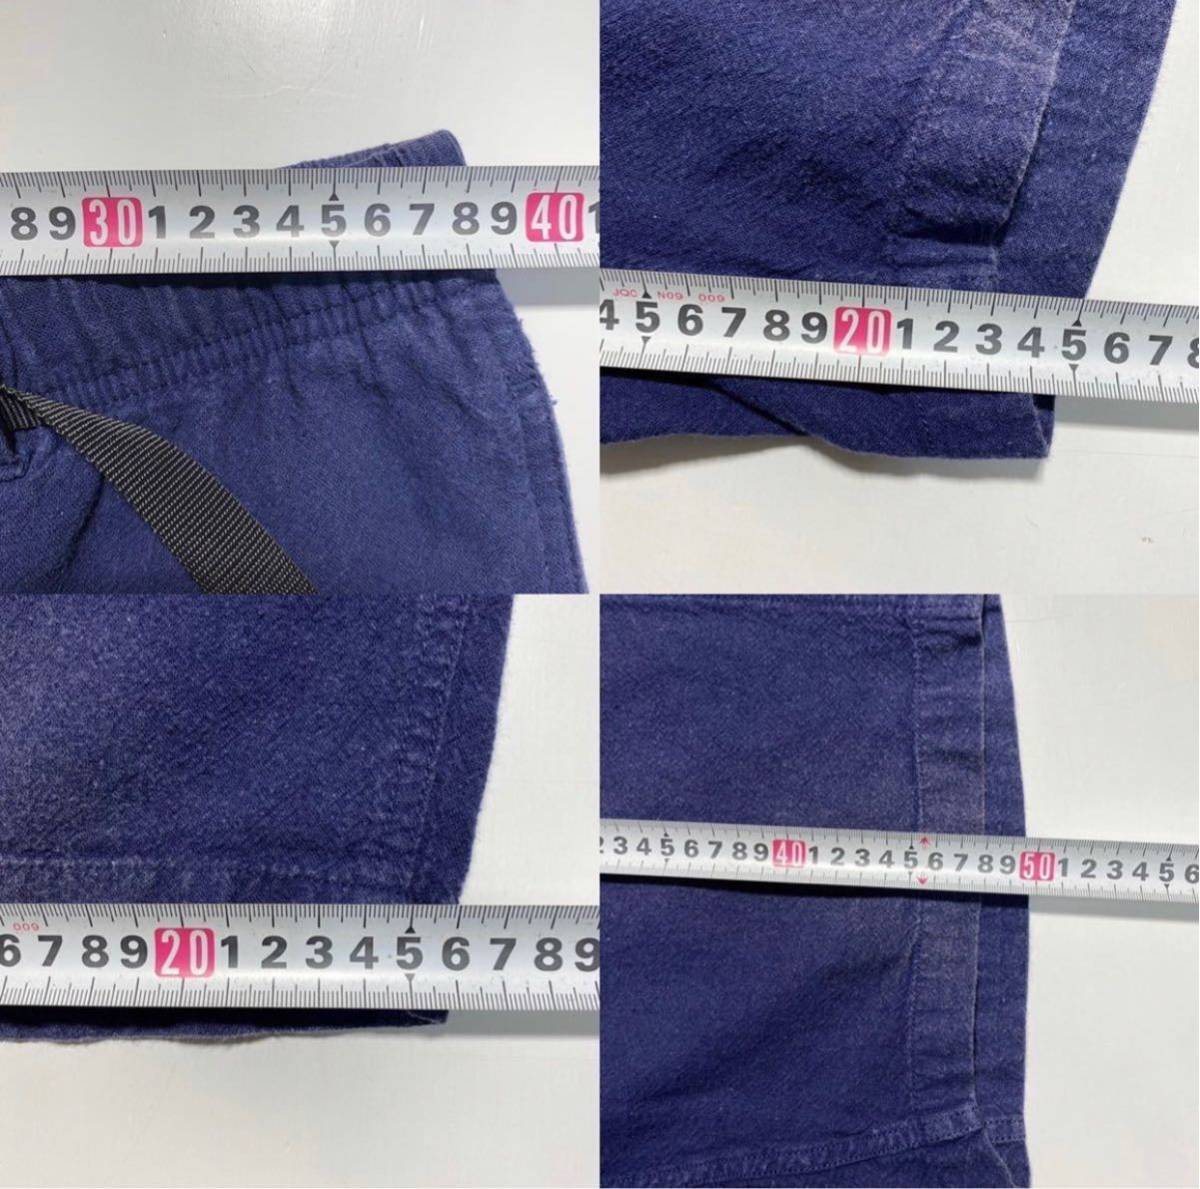 [L]GRAMICCI COTTON LINEN ZIPPER SHORTS Gramicci хлопок linen молния шорты шорты темно-синий (GMP-17S013) Y518